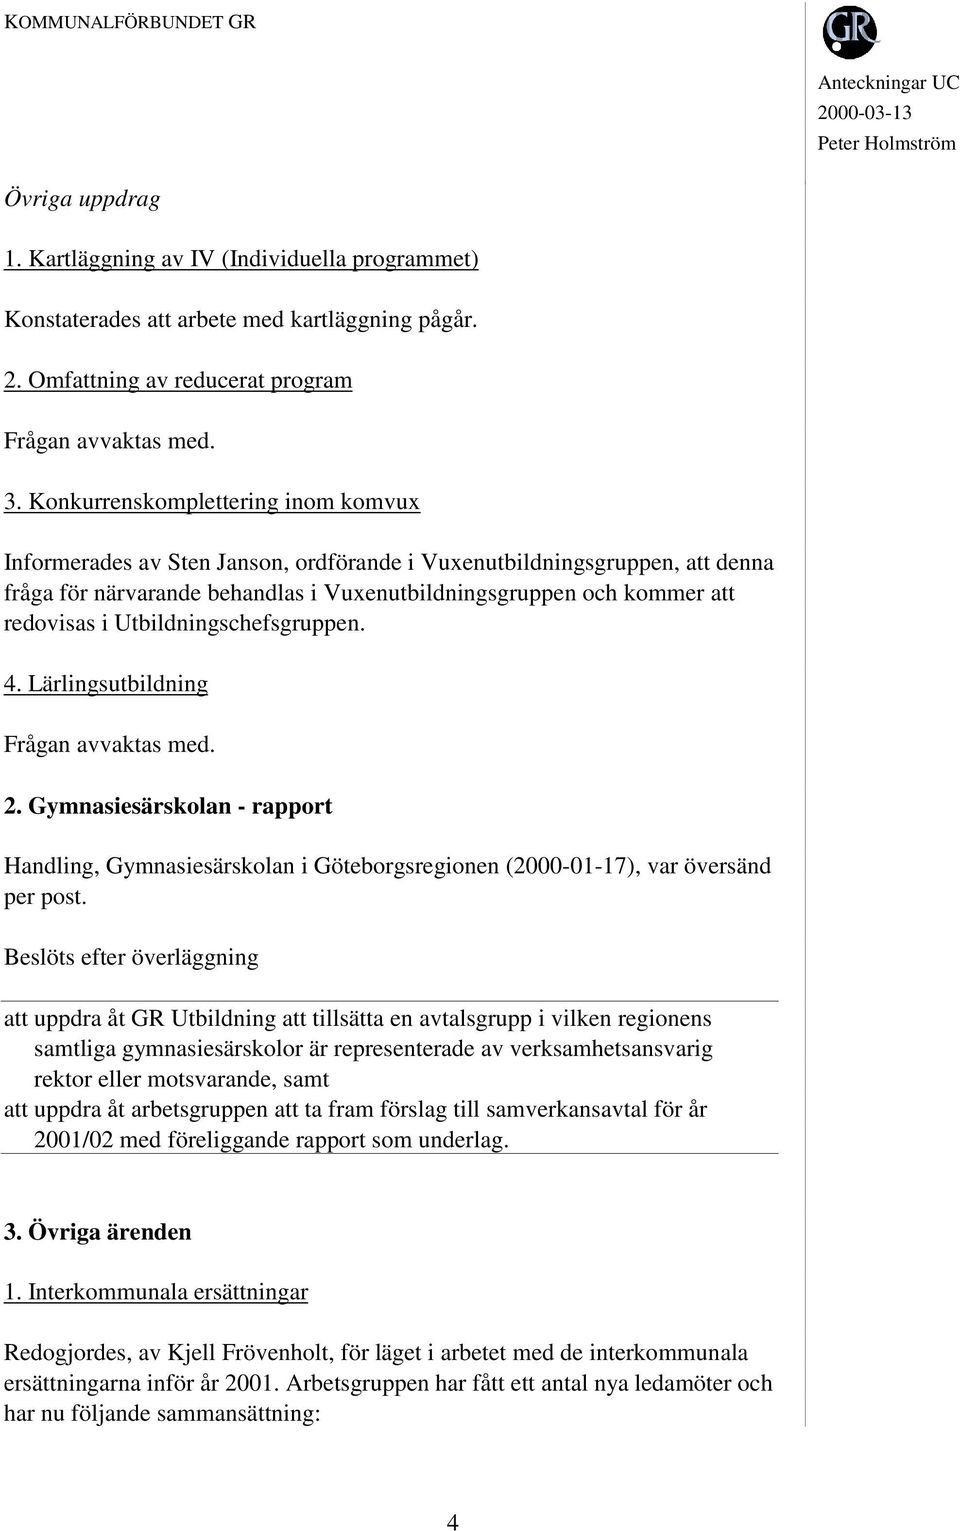 Utbildningschefsgruppen. 4. Lärlingsutbildning Frågan avvaktas med. 2. Gymnasiesärskolan - rapport Handling, Gymnasiesärskolan i Göteborgsregionen (2000-01-17), var översänd per post.